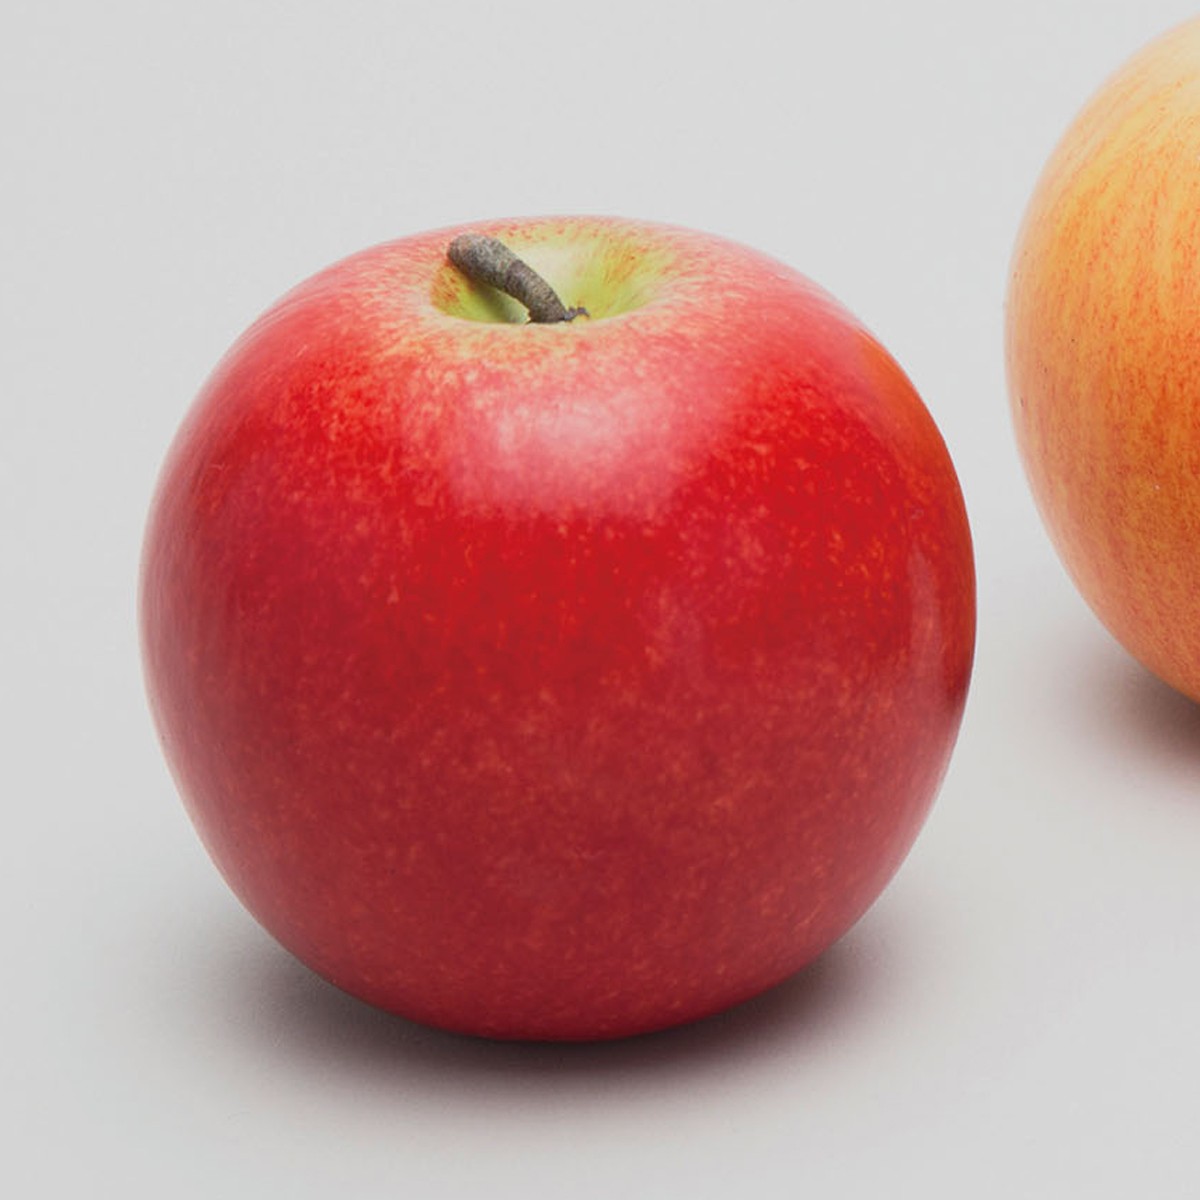 楽天市場 果物モデル りんご 赤 12個セット 硬質スチロール製 デッサン スケッチ 絵画 モデル 果物 野菜 画材 ものづくりのアートロコ